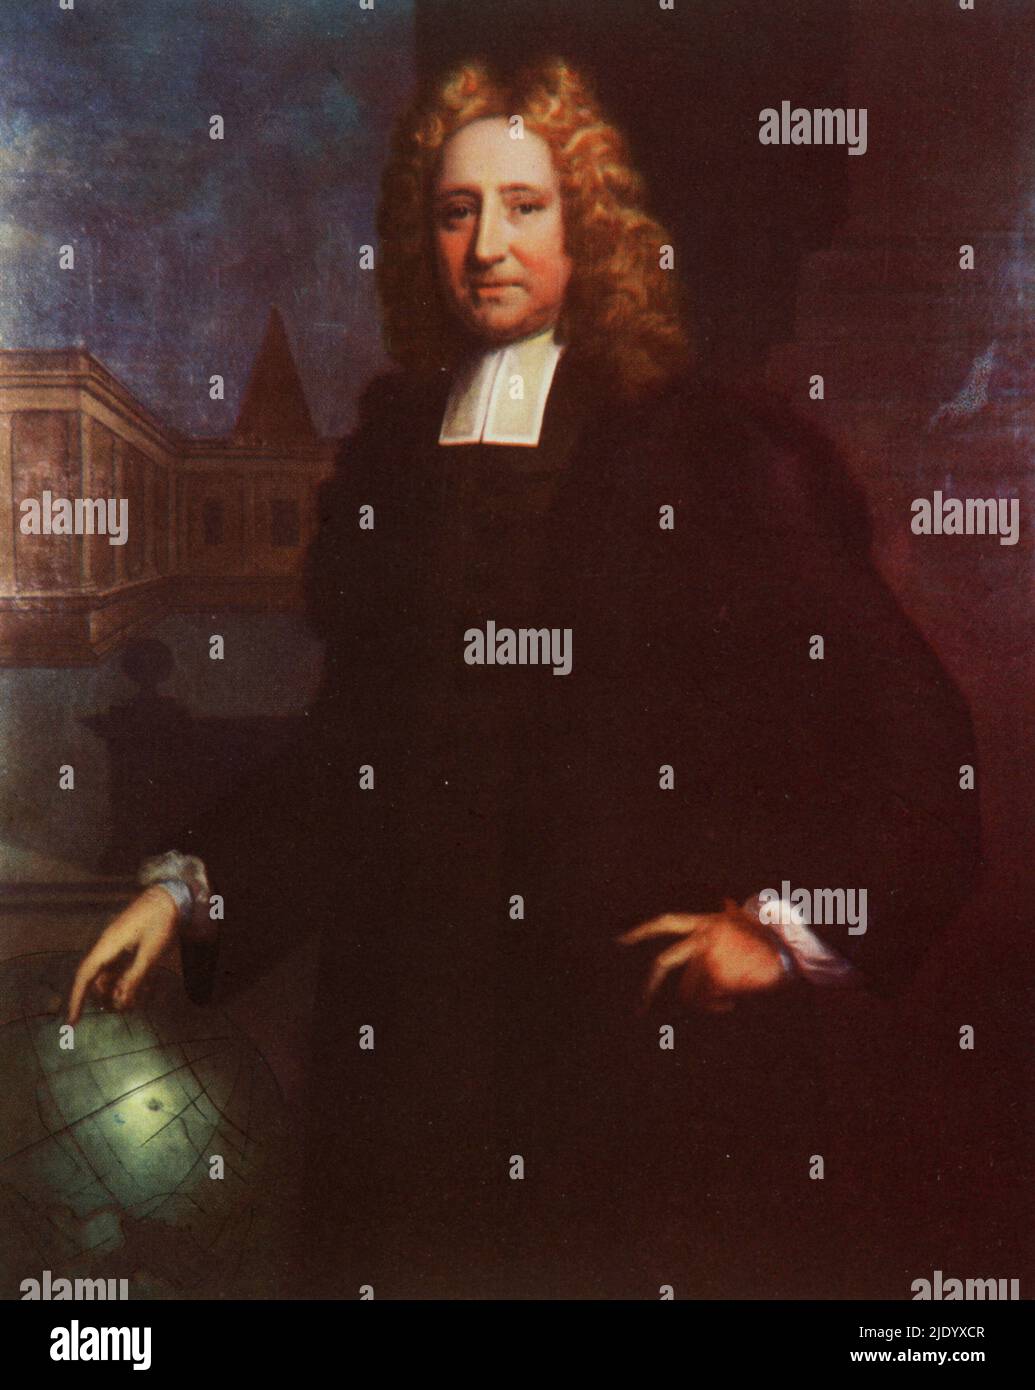 Edmond Halley (1656-1742), pág. 1712. Por Thomas Murray (1663-1735). Astrónomo, geofísico, matemático, meteorólogo y físico inglés. Fue el segundo astrónomo Royal en Gran Bretaña, sucediendo a John Flamsteed en 1720. Foto de stock